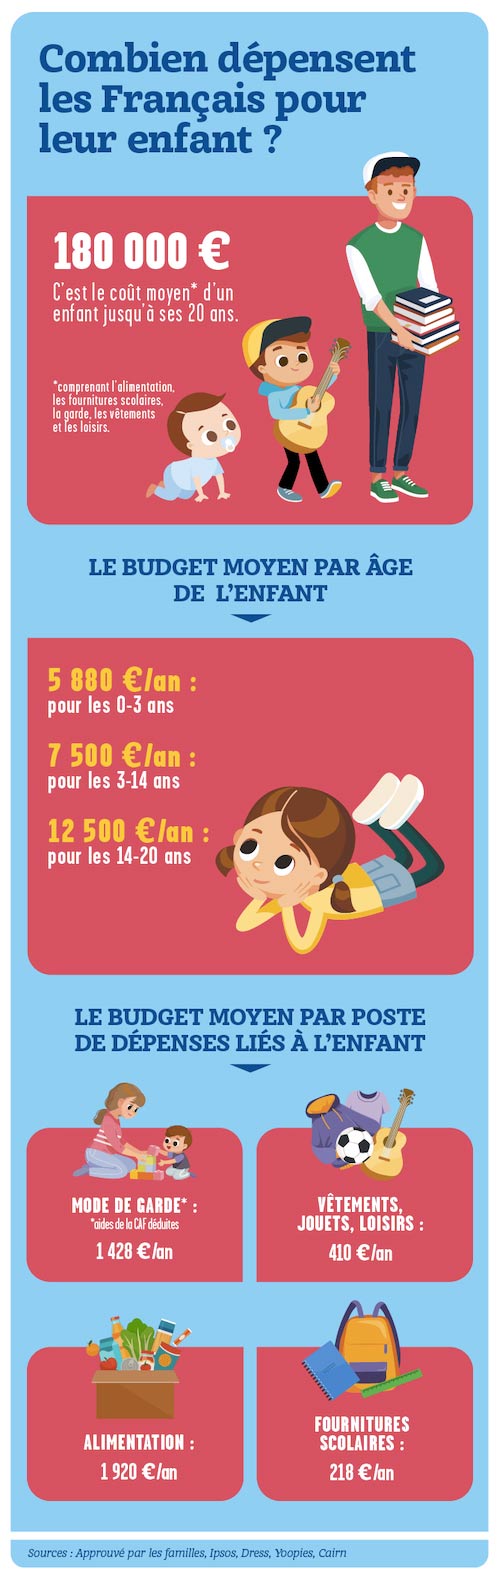 Combien dépensent les Français pour leur enfant ?